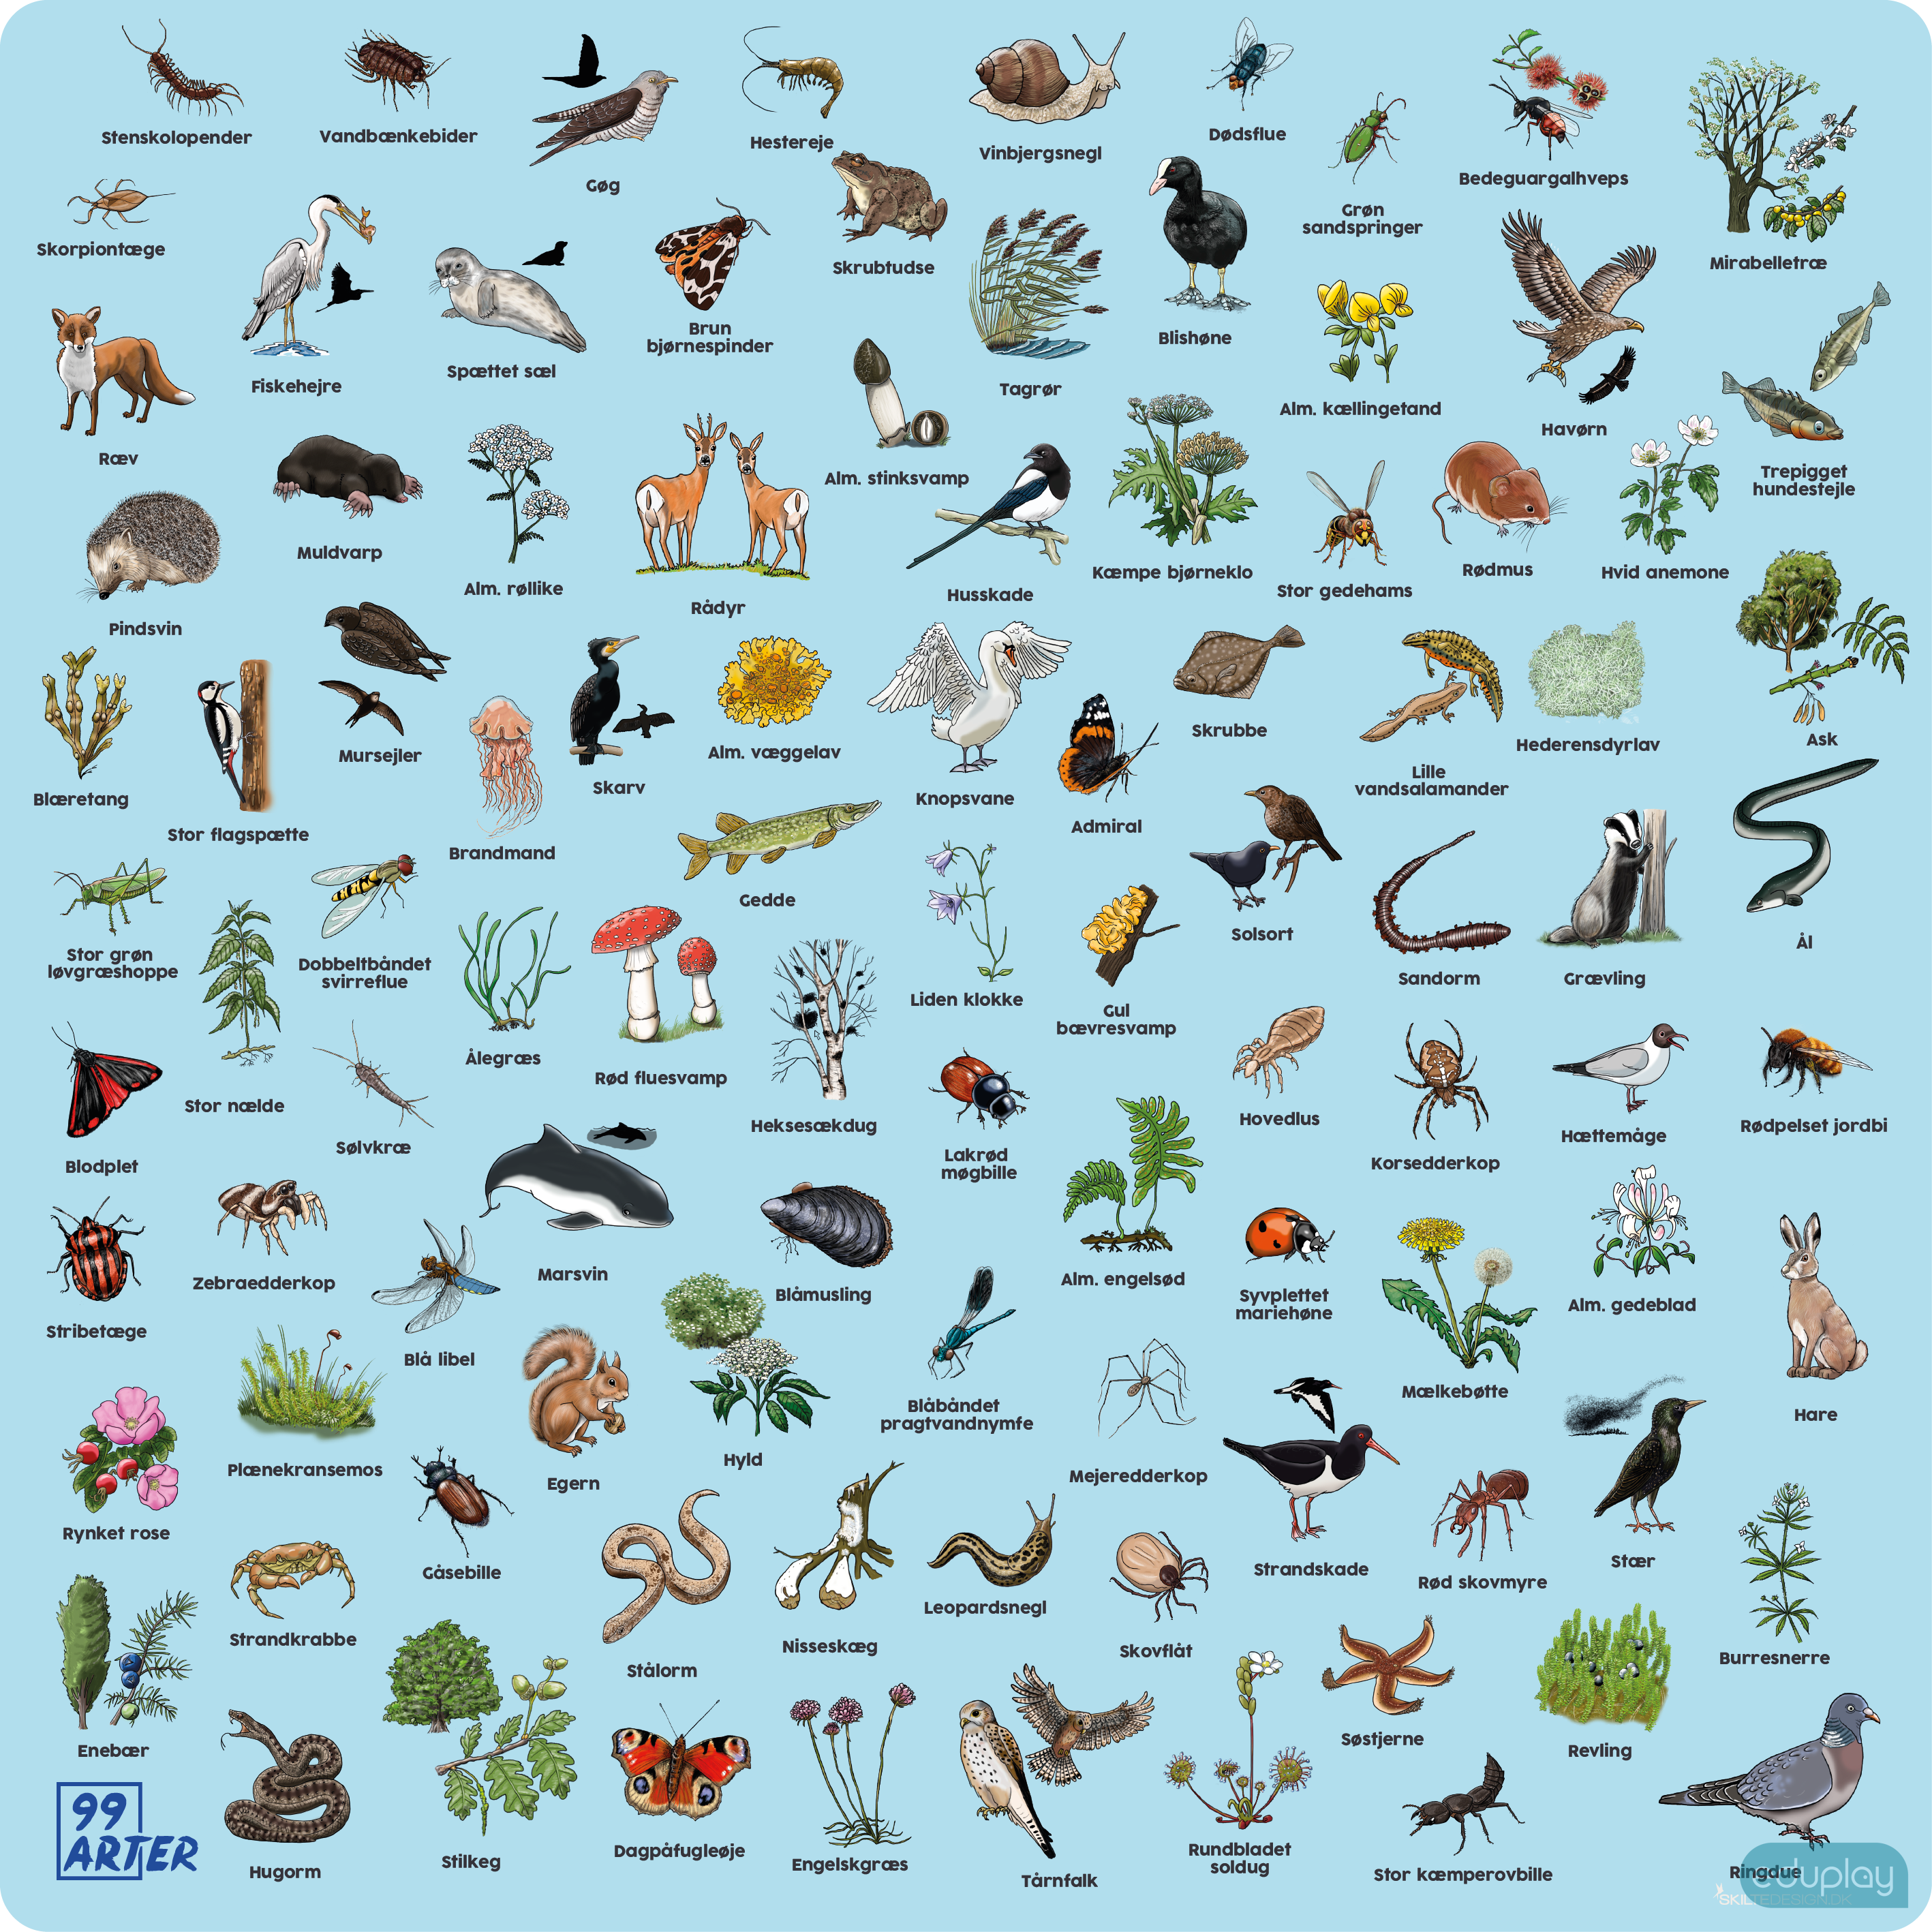 99 arter